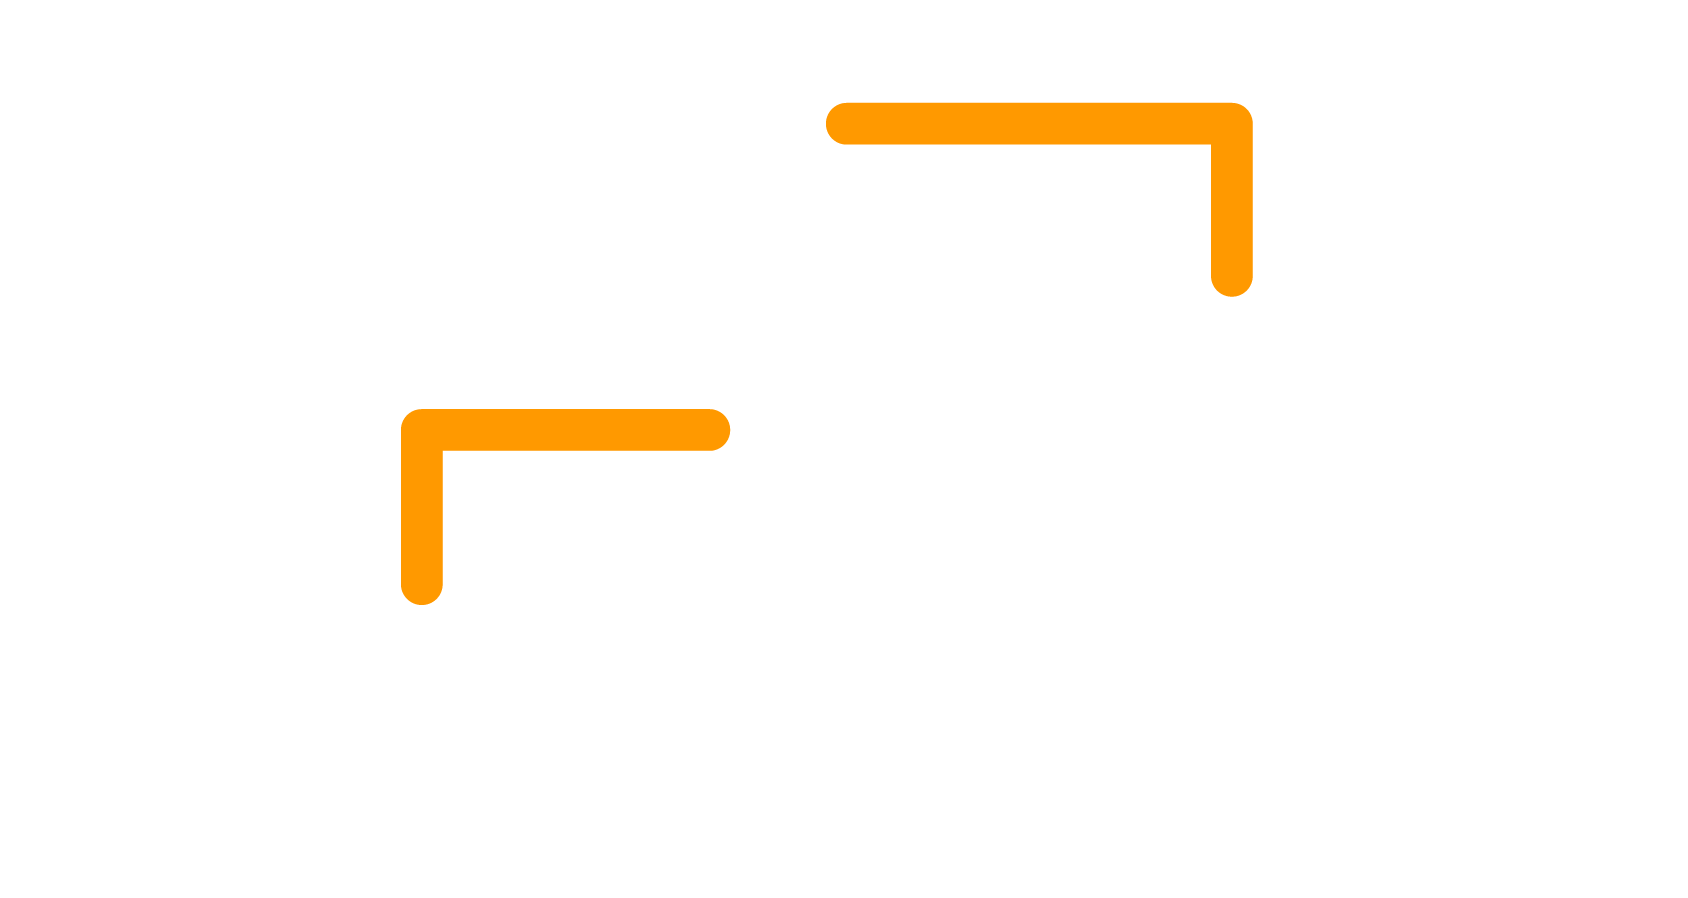 Soft Skills Tales